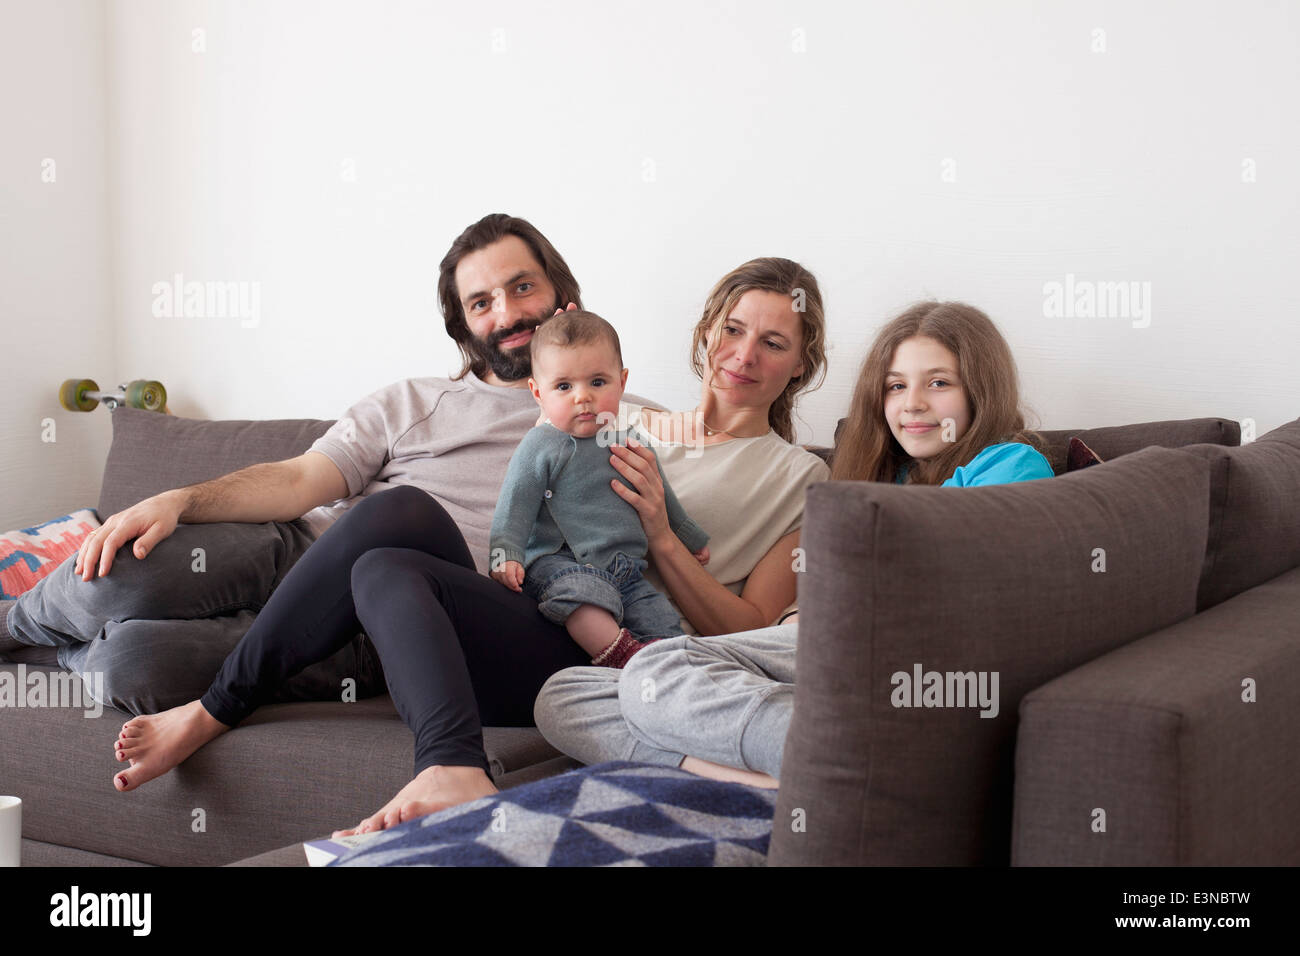 Portrait de famille avec deux enfants sitting on sofa in living room Banque D'Images